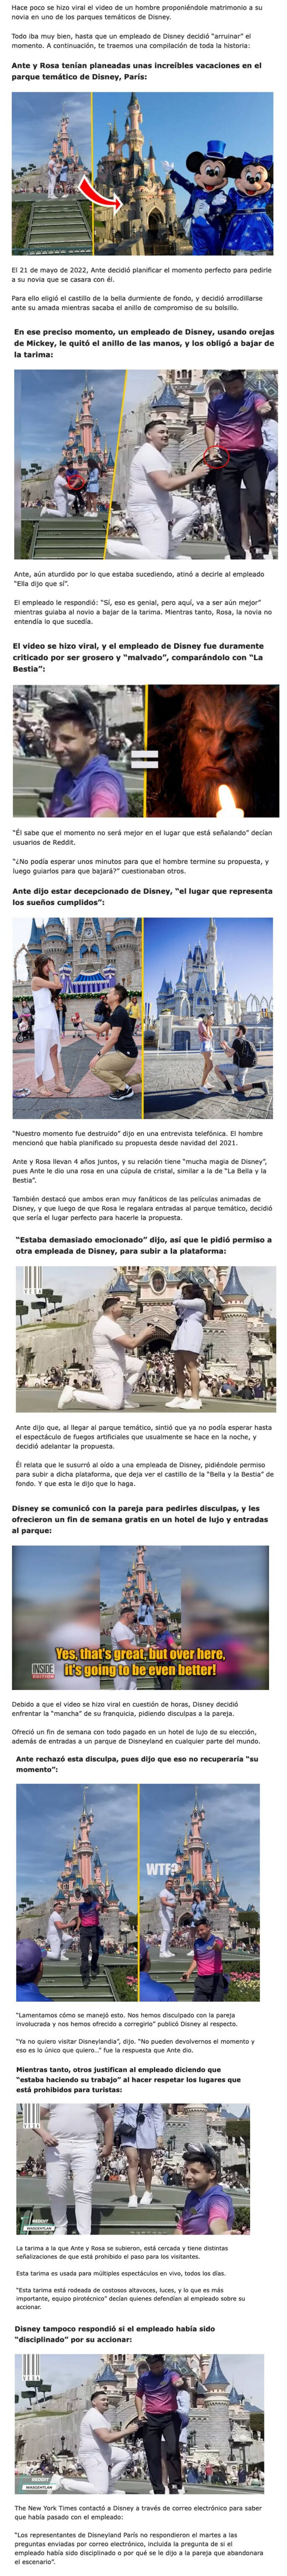 GALERÍA: 10 Cosas que pasaron durante la propuesta de matrimonio que fue arruinada por un empleado de Disneyland